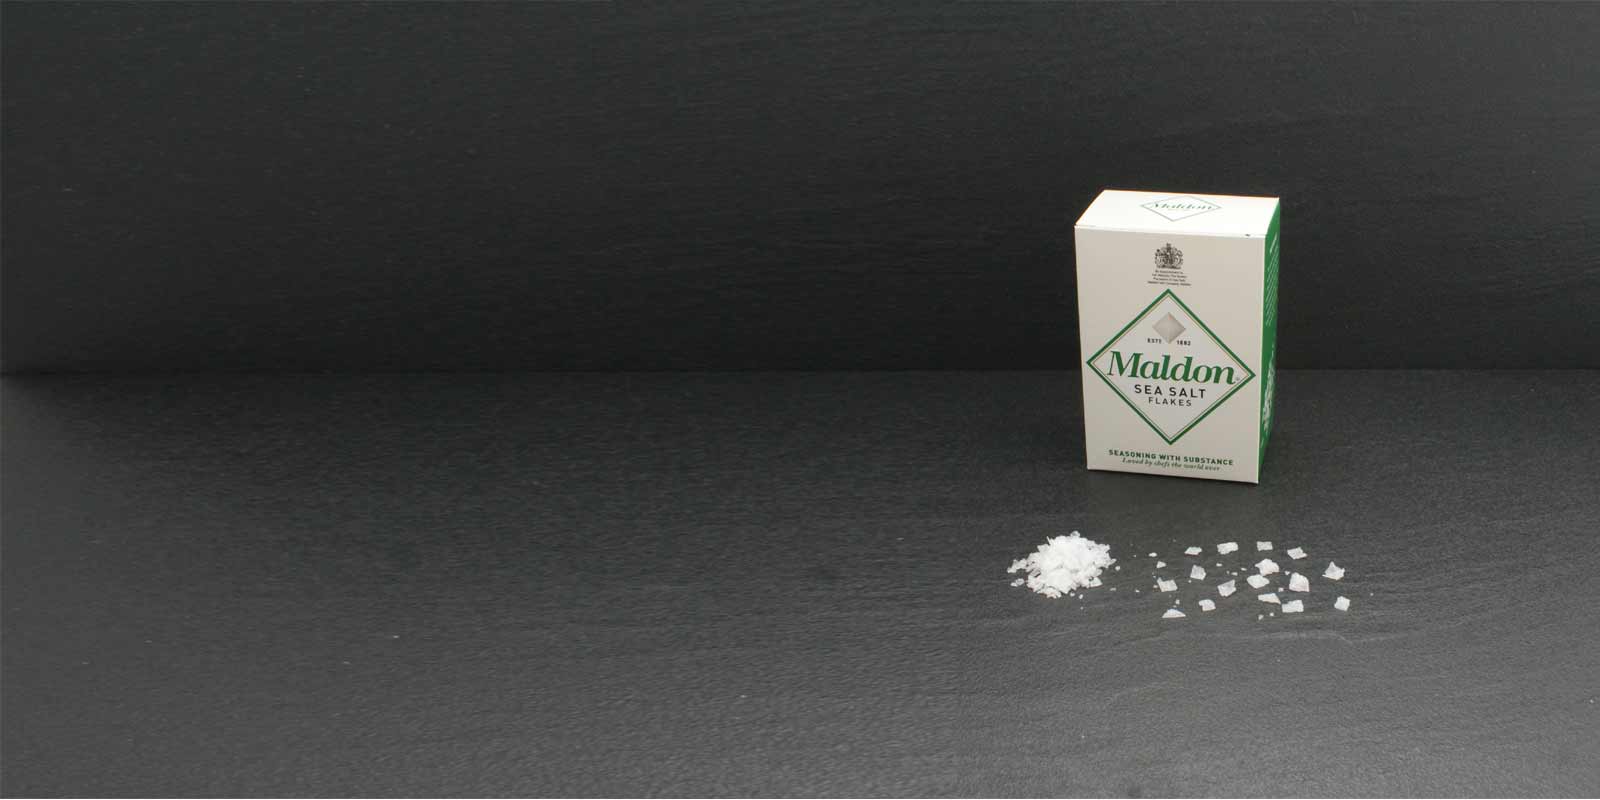 Maldon Sea Salt Flakes Kristali Karakteristicni kristali soli u obliku piramide su izuzetno tanki i mogu se lako utrljati medu prstima radi zacinjavanja. Vrijednu sol vadi Maldon Sea Salt Company, jedina kompanija za iskopavanje soli u Engleskoj. Mala porodicna firma se bavi preradom i prodajom soli od 1882. Morska so Maldon dostupna je samo u ogranicenim kolicinama.